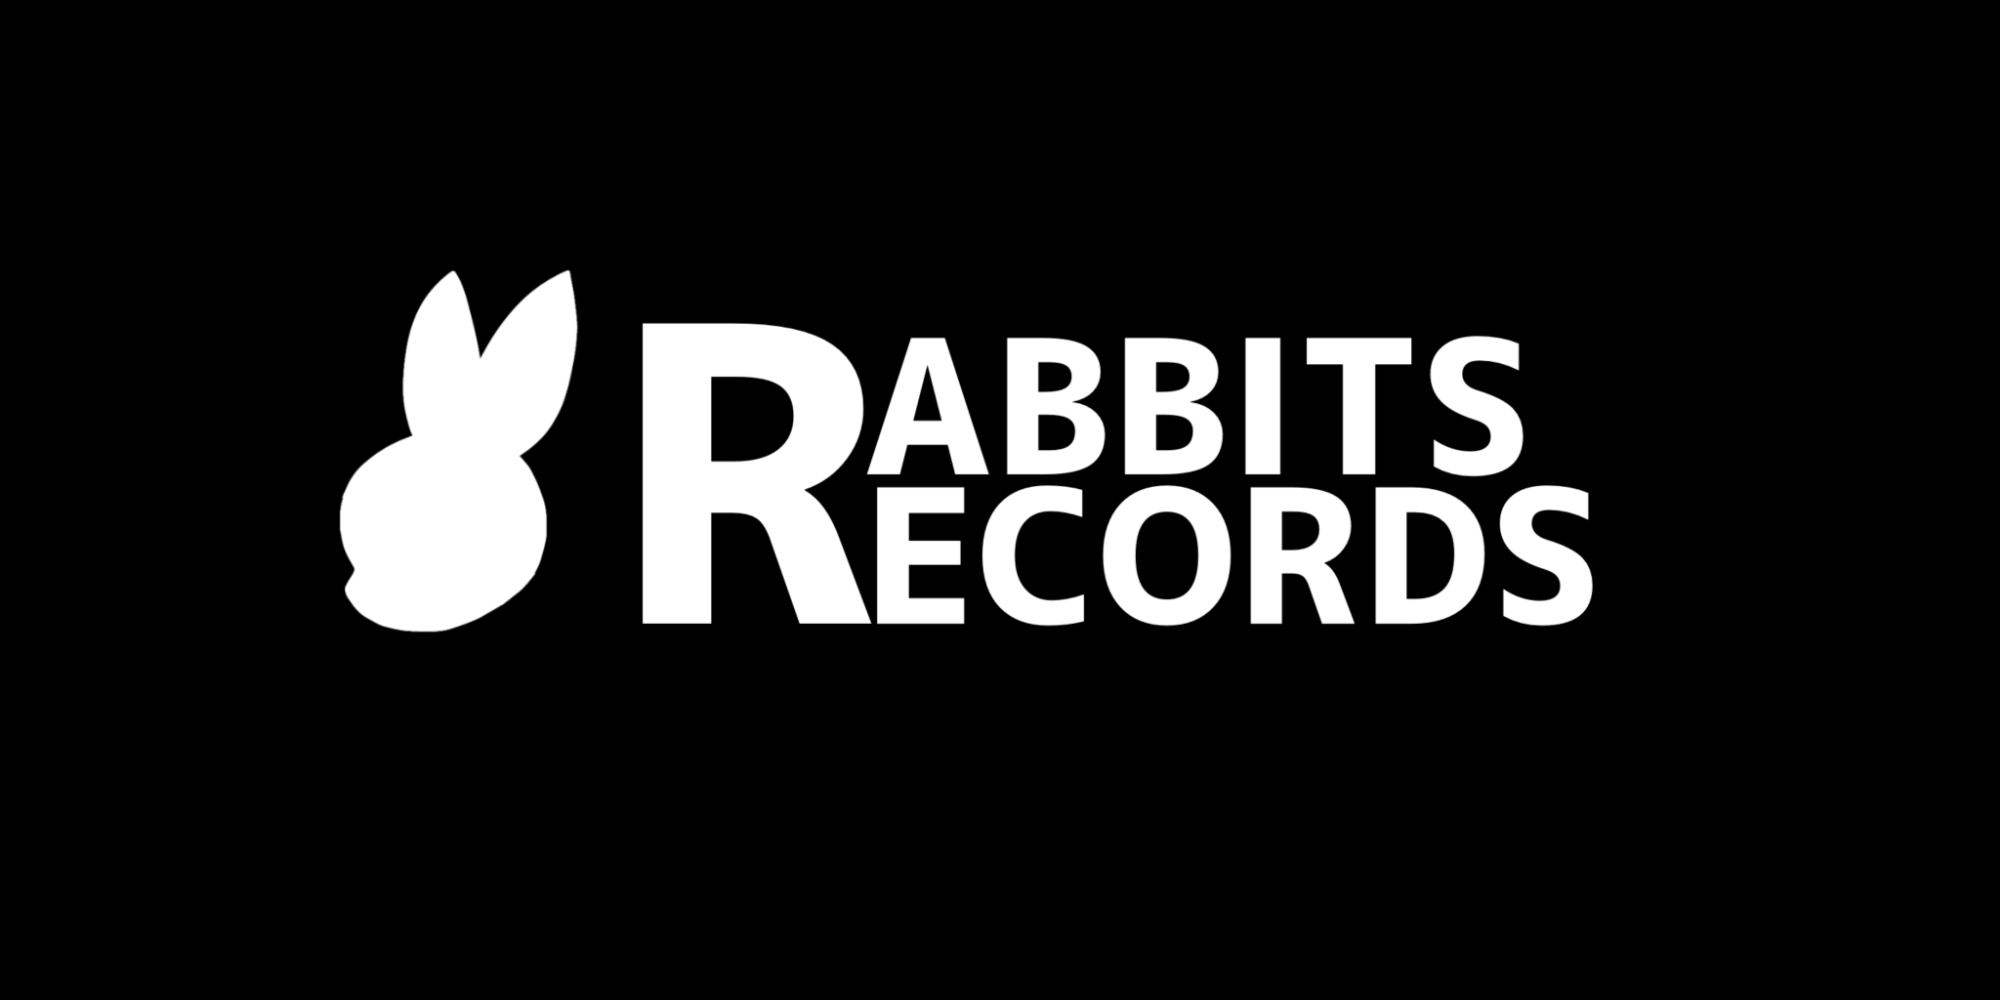 RABBITS RECORDS SHOP